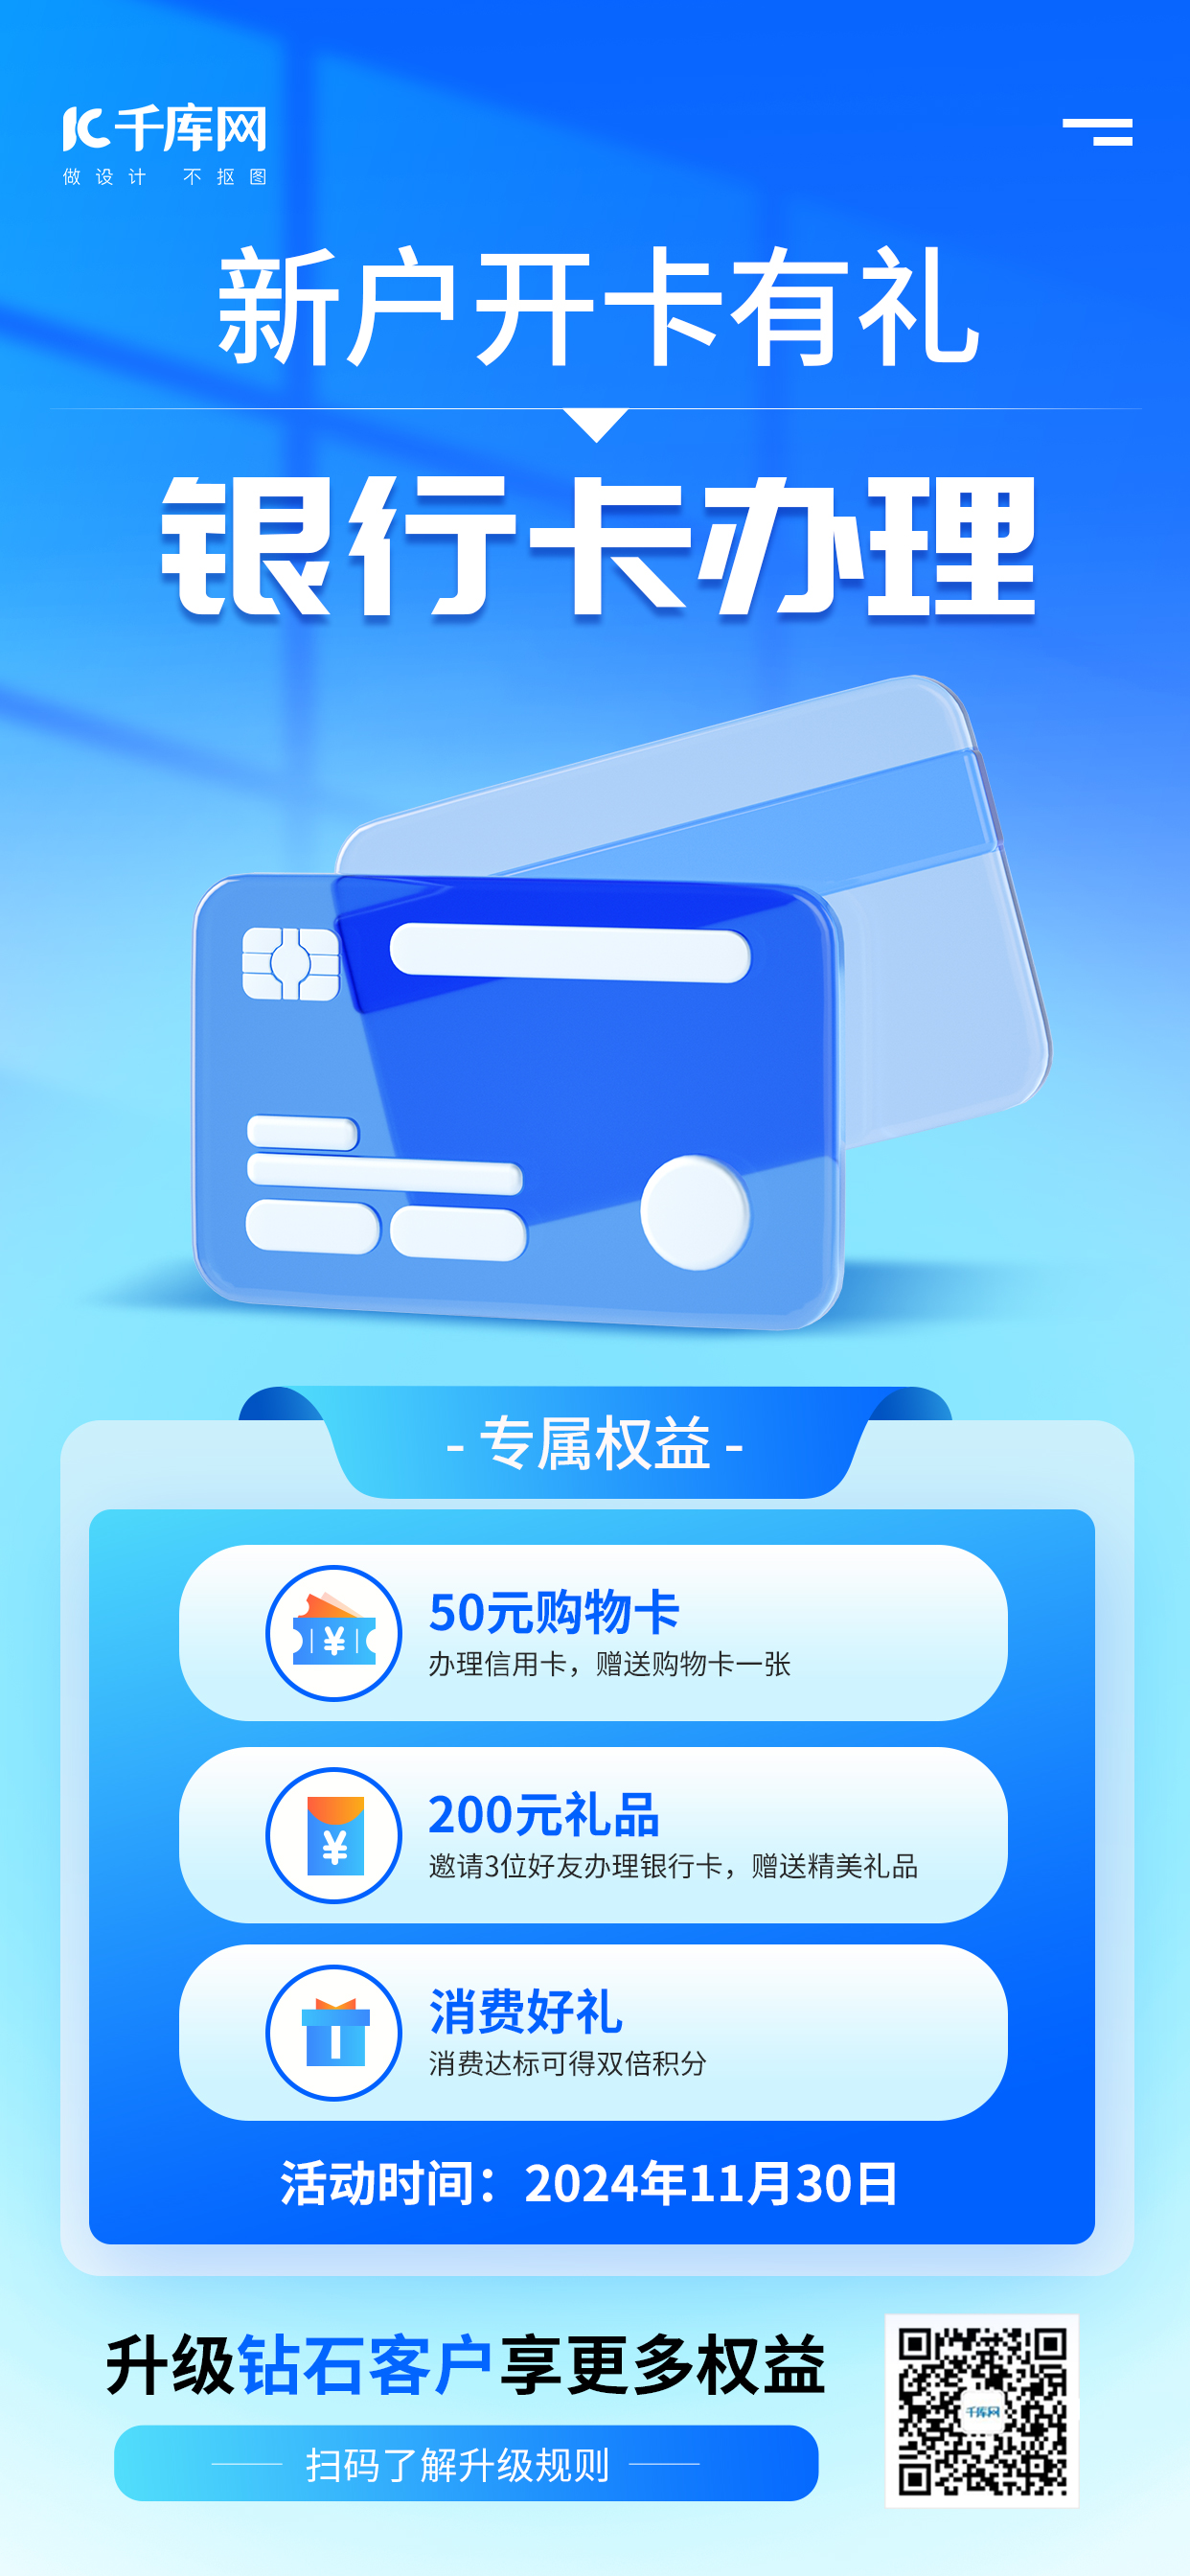 银行卡办理金融蓝色3d海报手机端海报设计素材图片